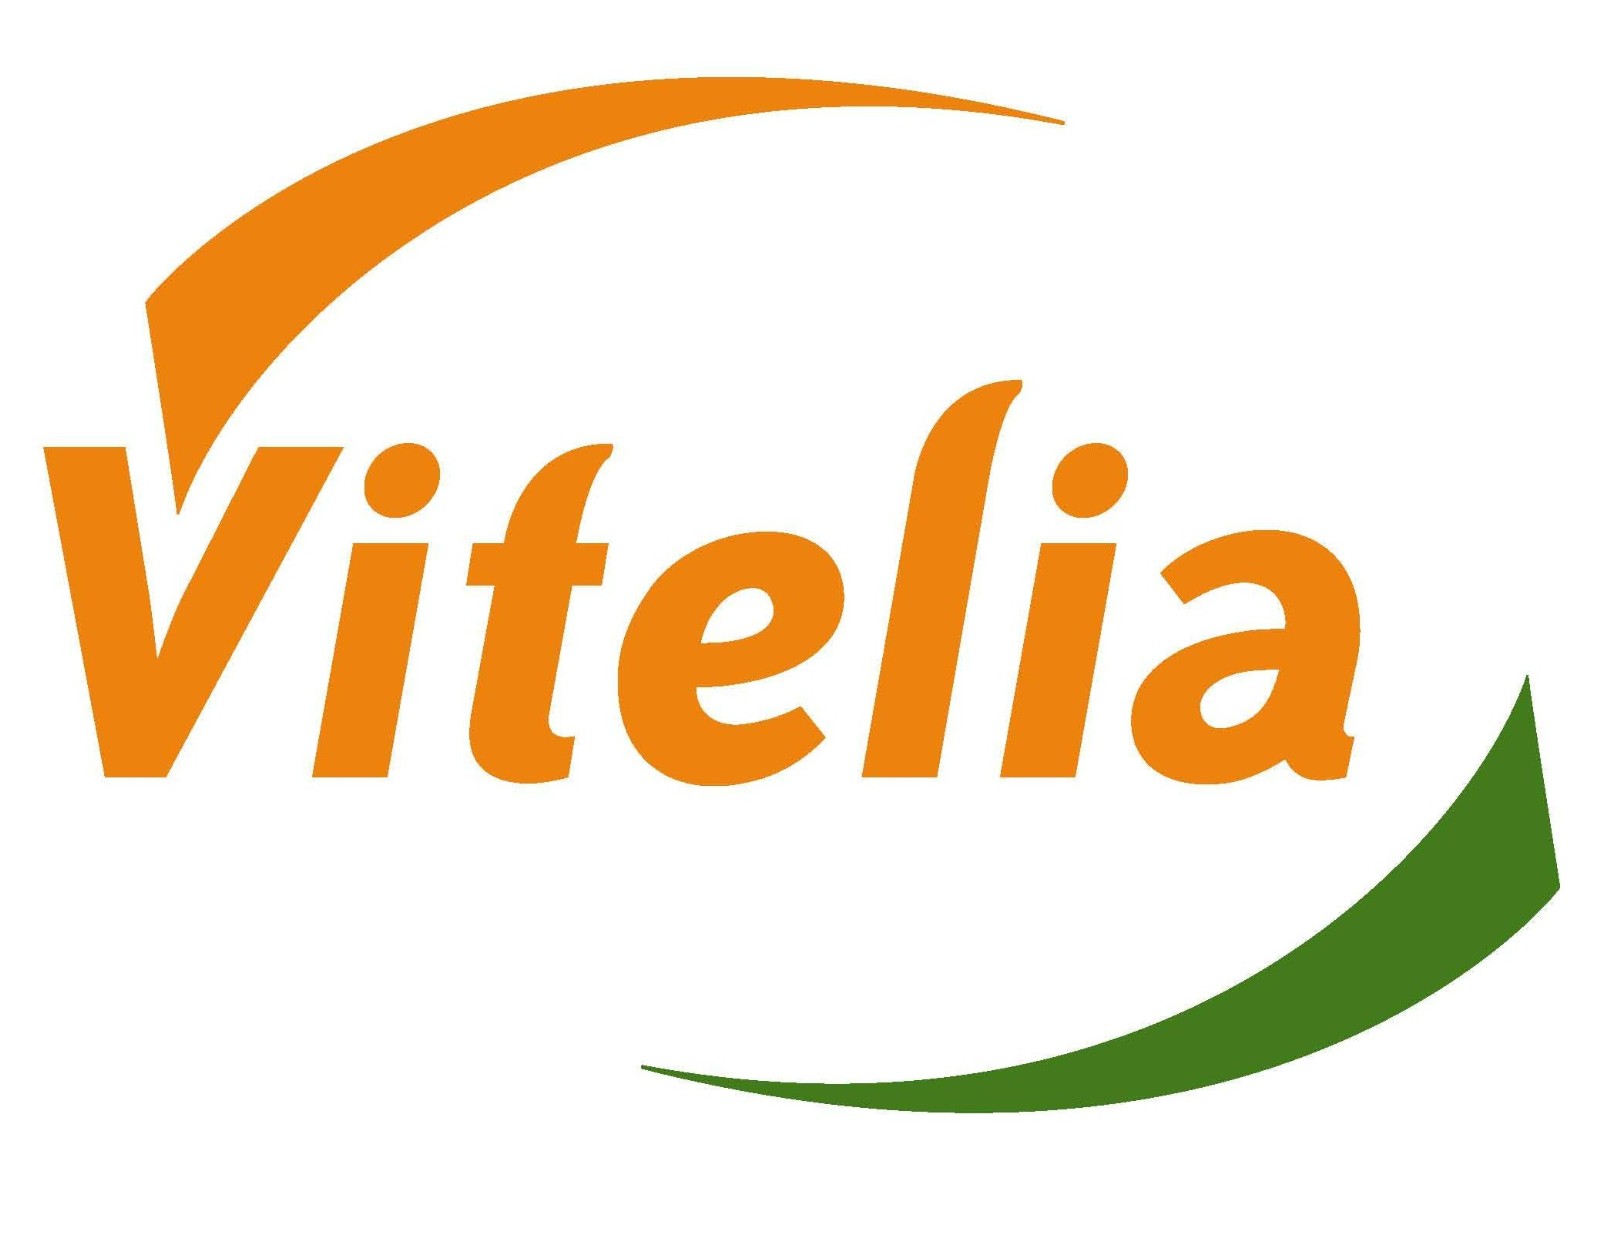 Vitelia logo